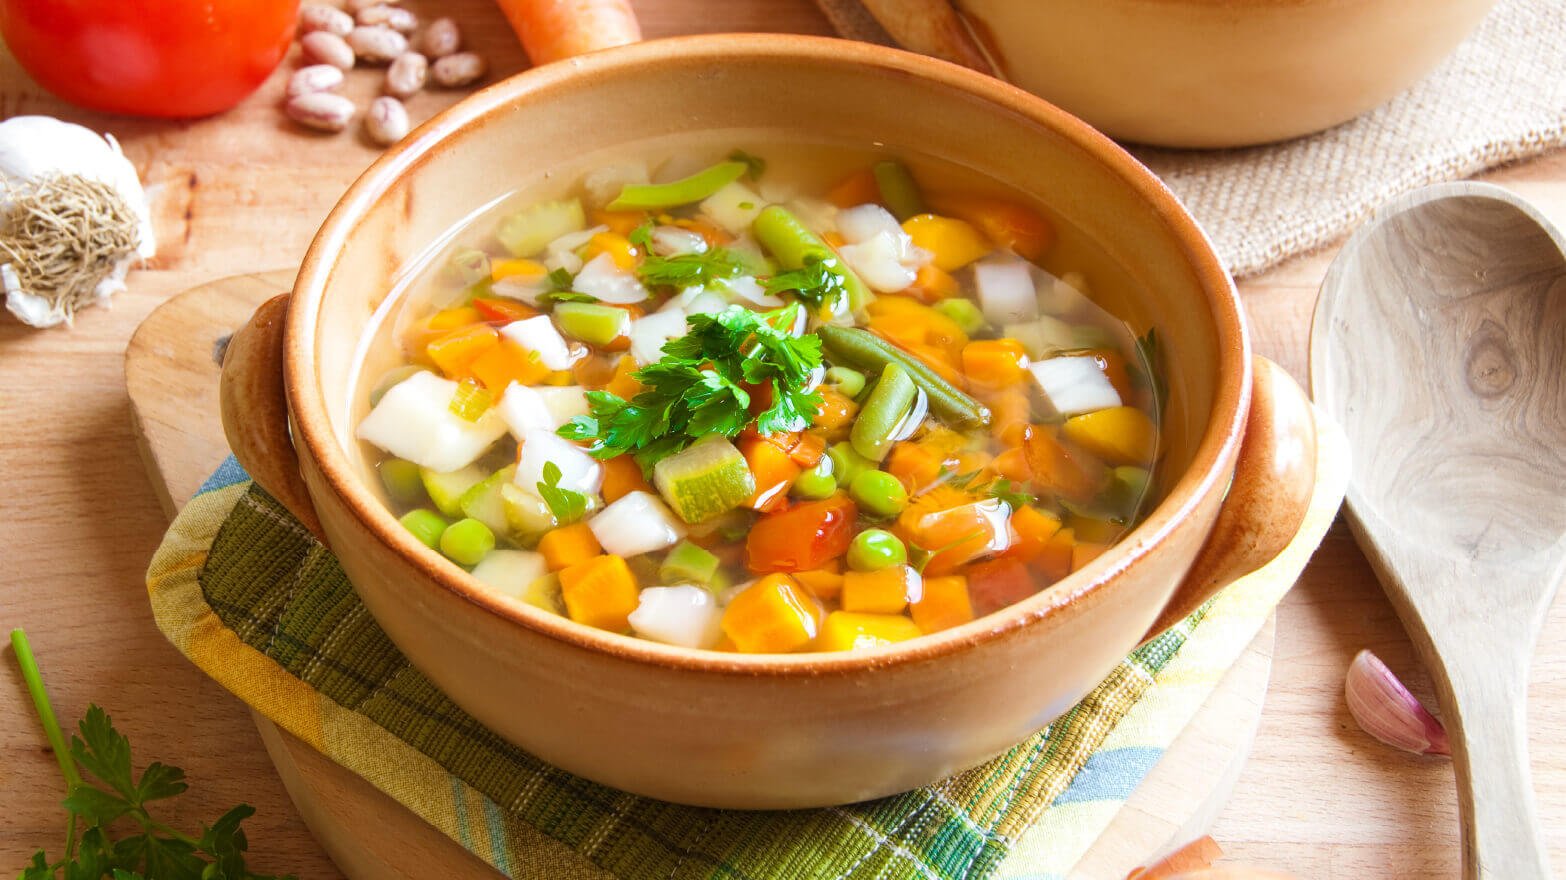 Pressure-cooker vegetable soup